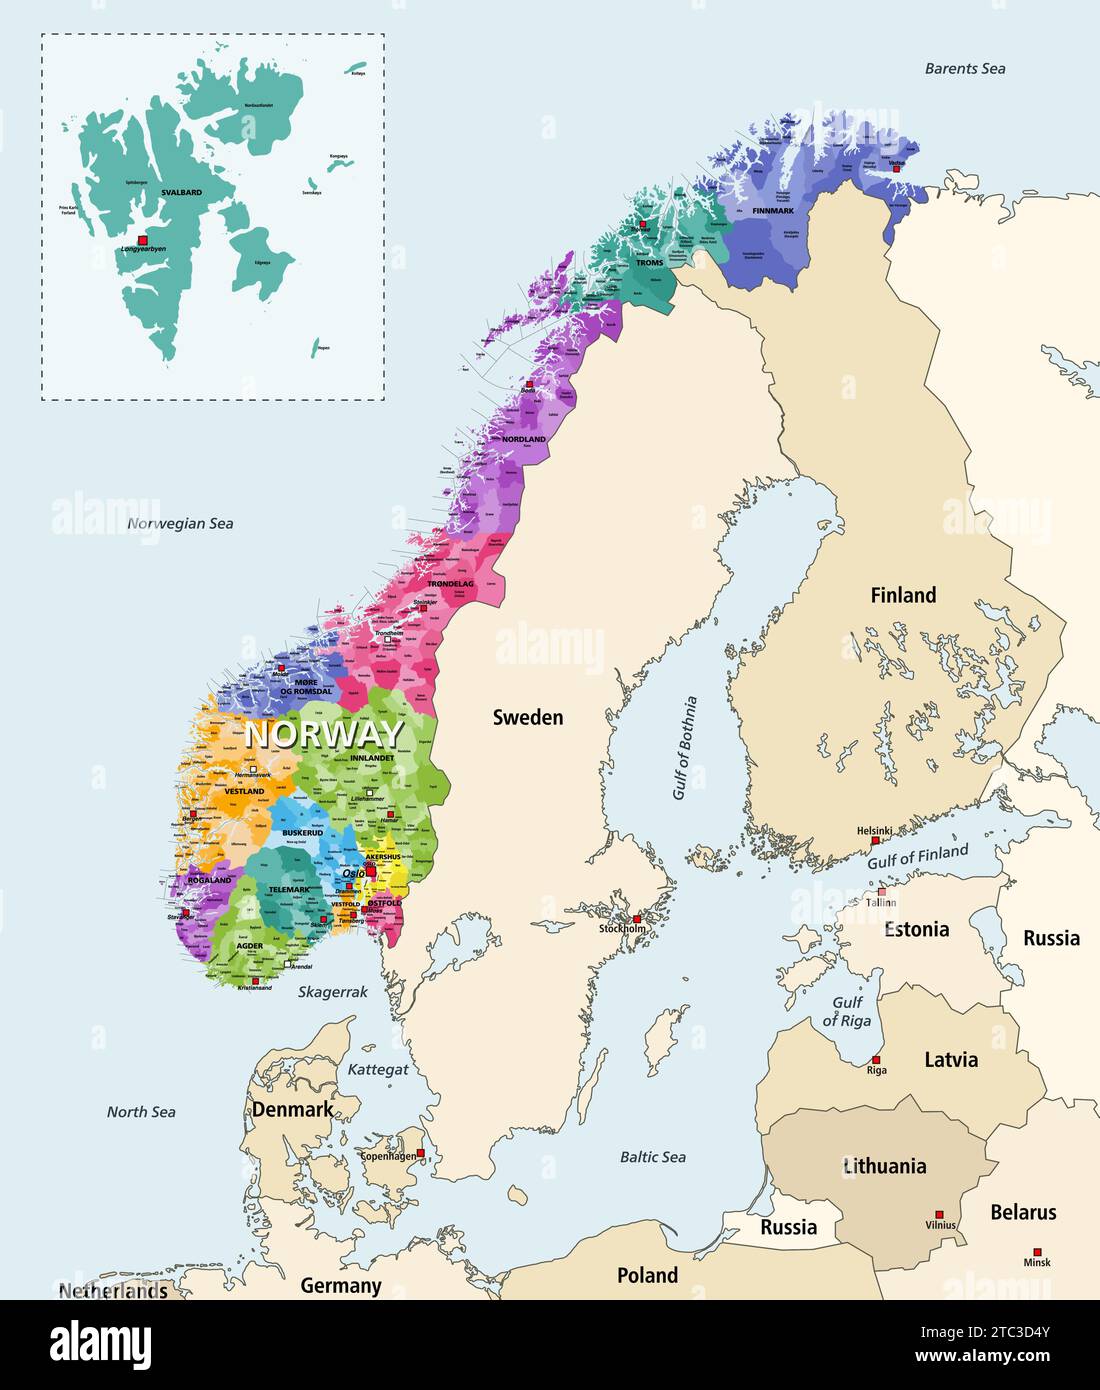 Comuni della Norvegia mappa vettoriale dettagliata e colorata per regioni amministrative (contee). La Norvegia è circondata da una mappa di altri paesi Illustrazione Vettoriale